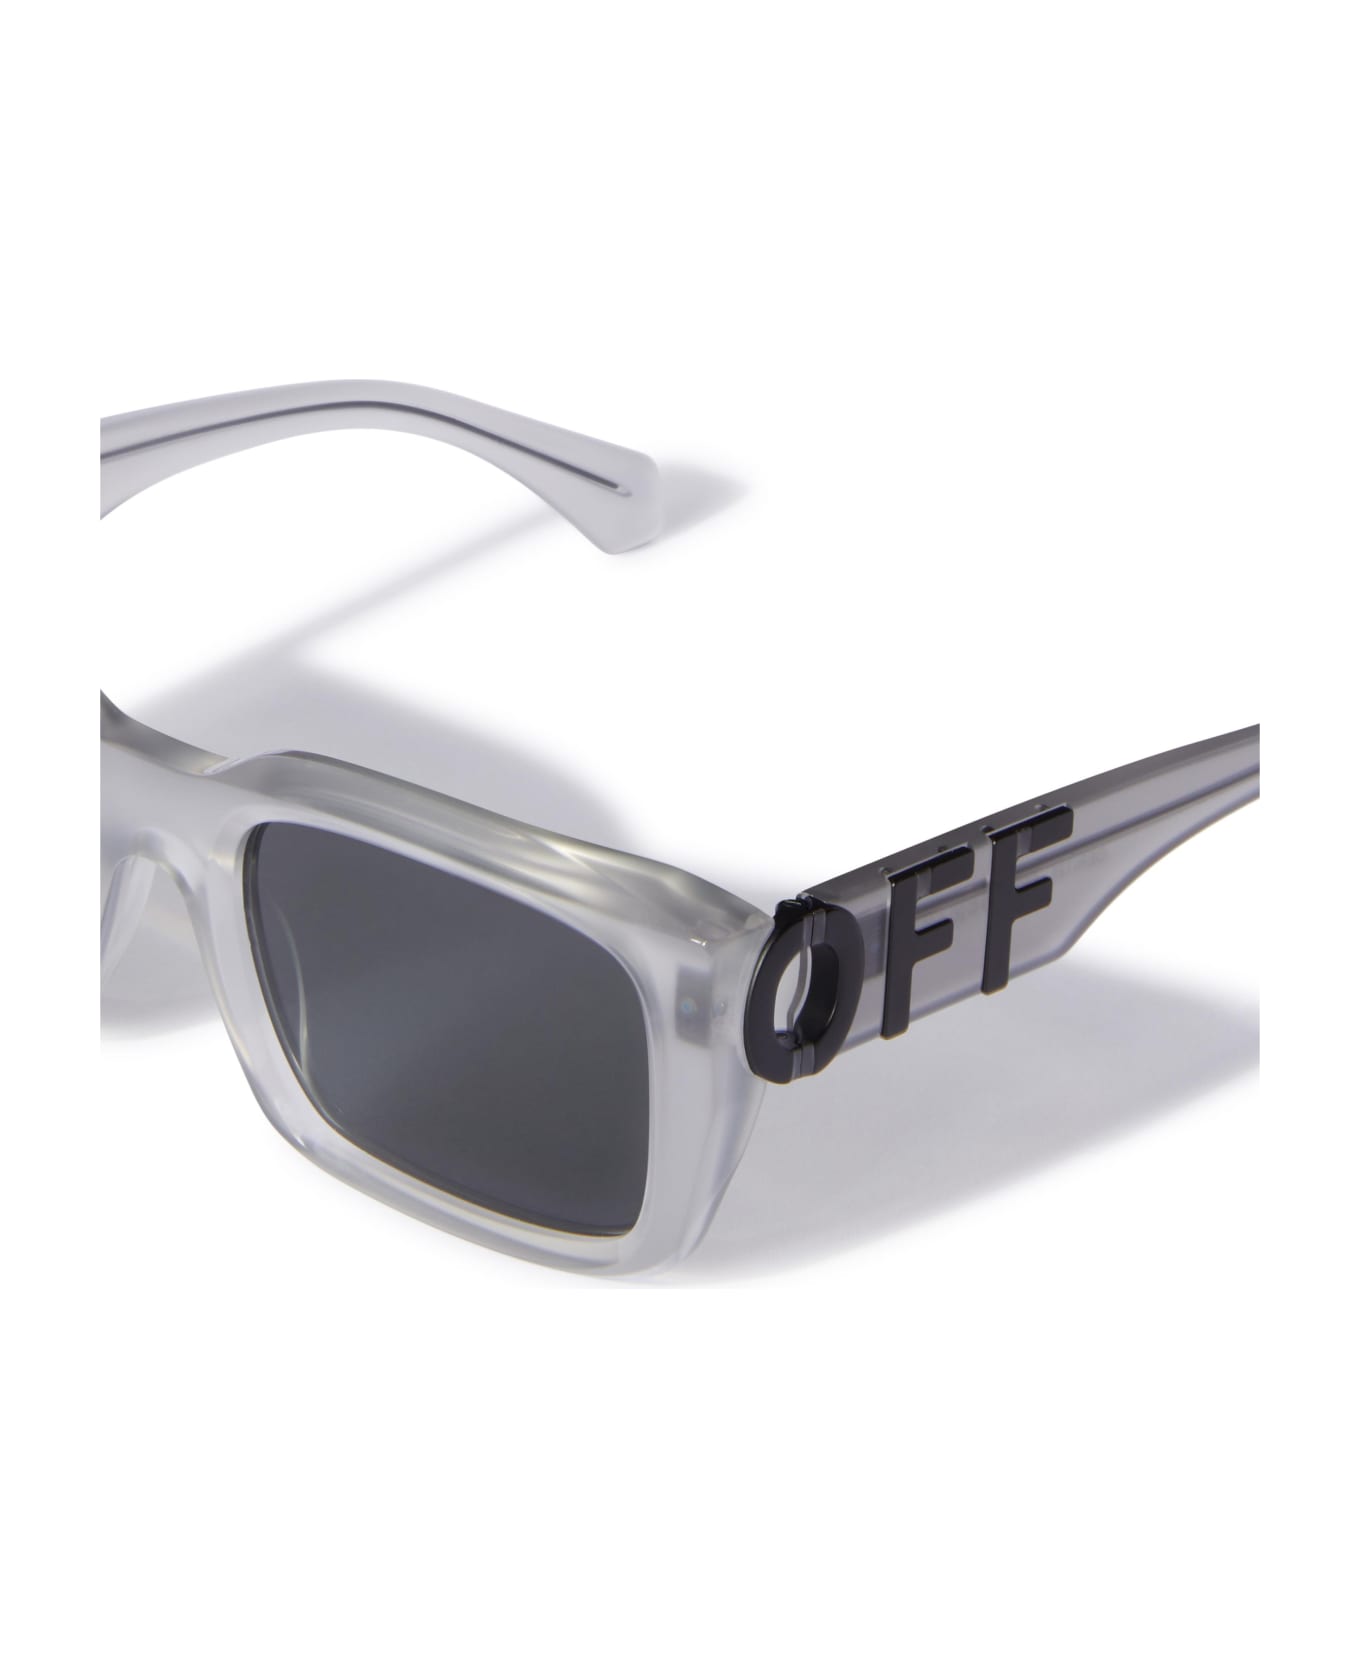 Off-White Sunglasses - Grigio/Grigio サングラス